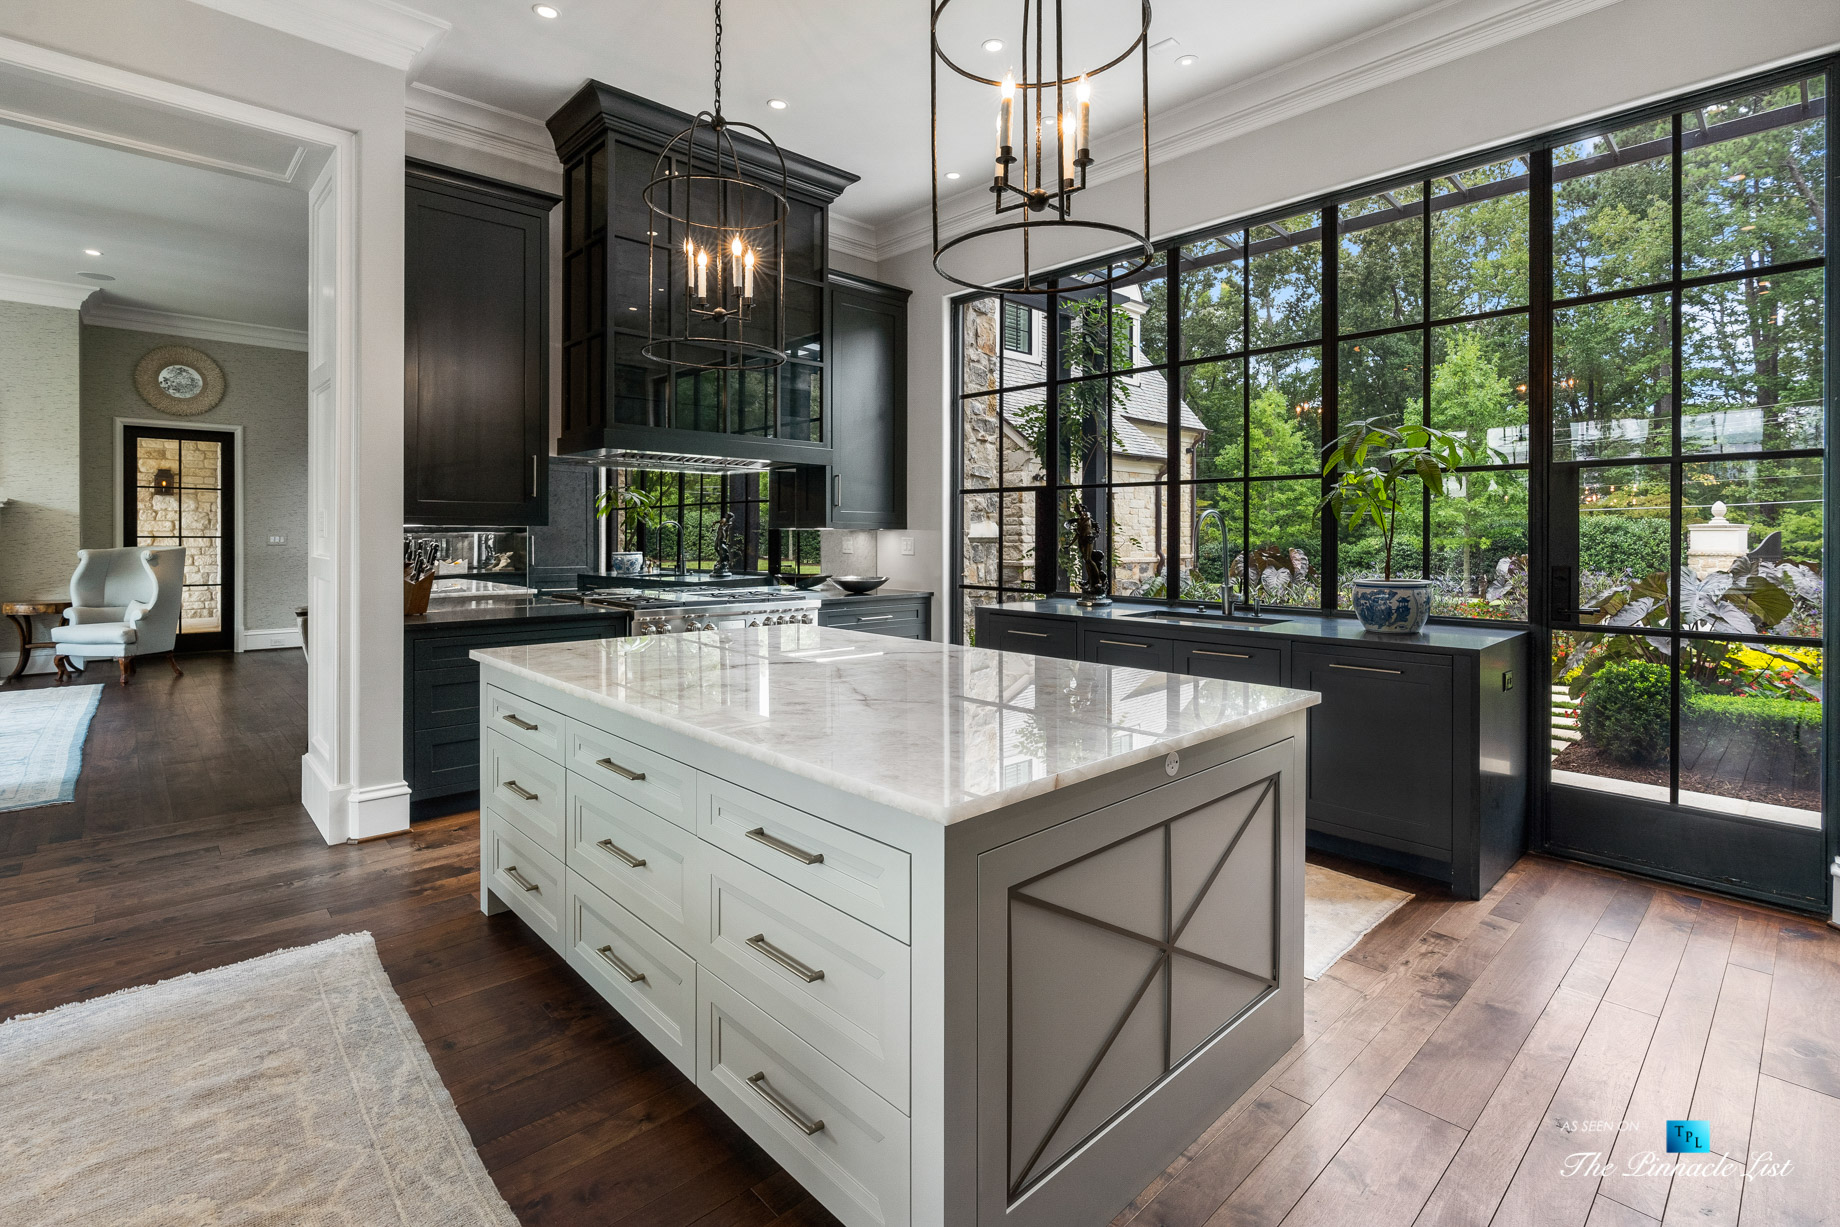 1150 W Garmon Rd, Atlanta, GA, USA – Kitchen Island with Window View – Luxury Real Estate – Buckhead Estate Home